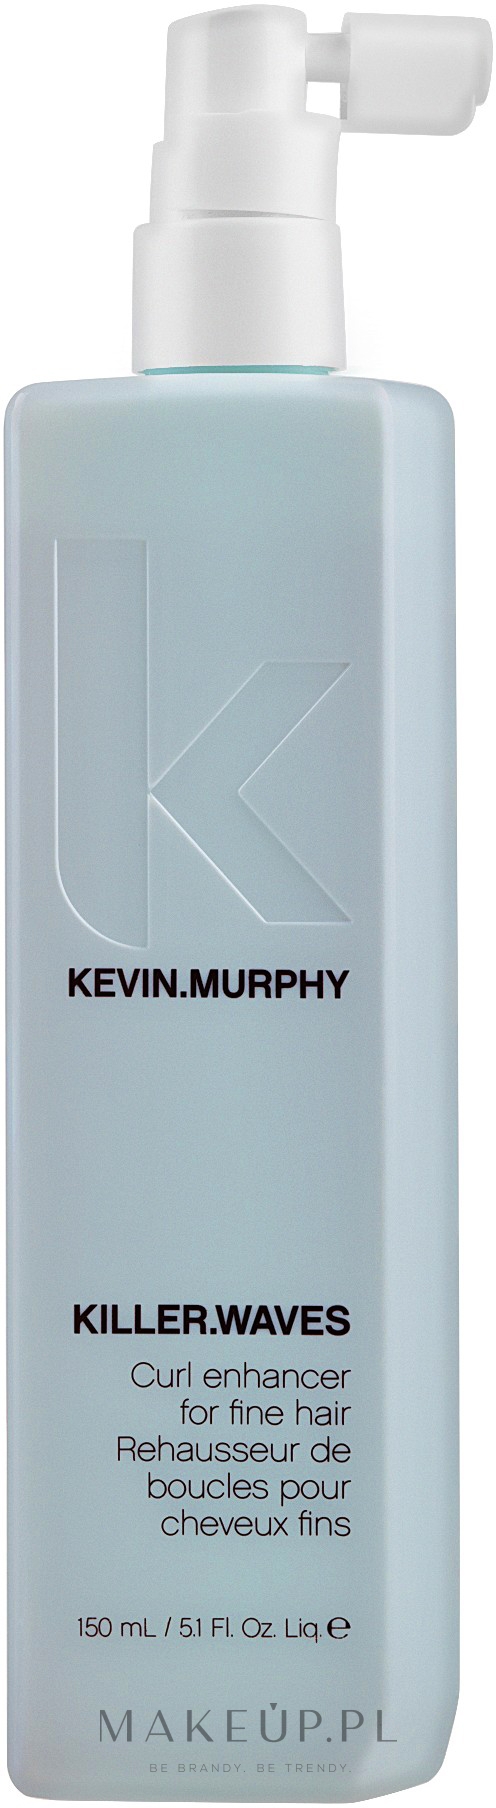 Teksturujący spray do wzmocnienia loków i nadania objętości włosom - Kevin.Murphy Killer.Waves — Zdjęcie 150 ml